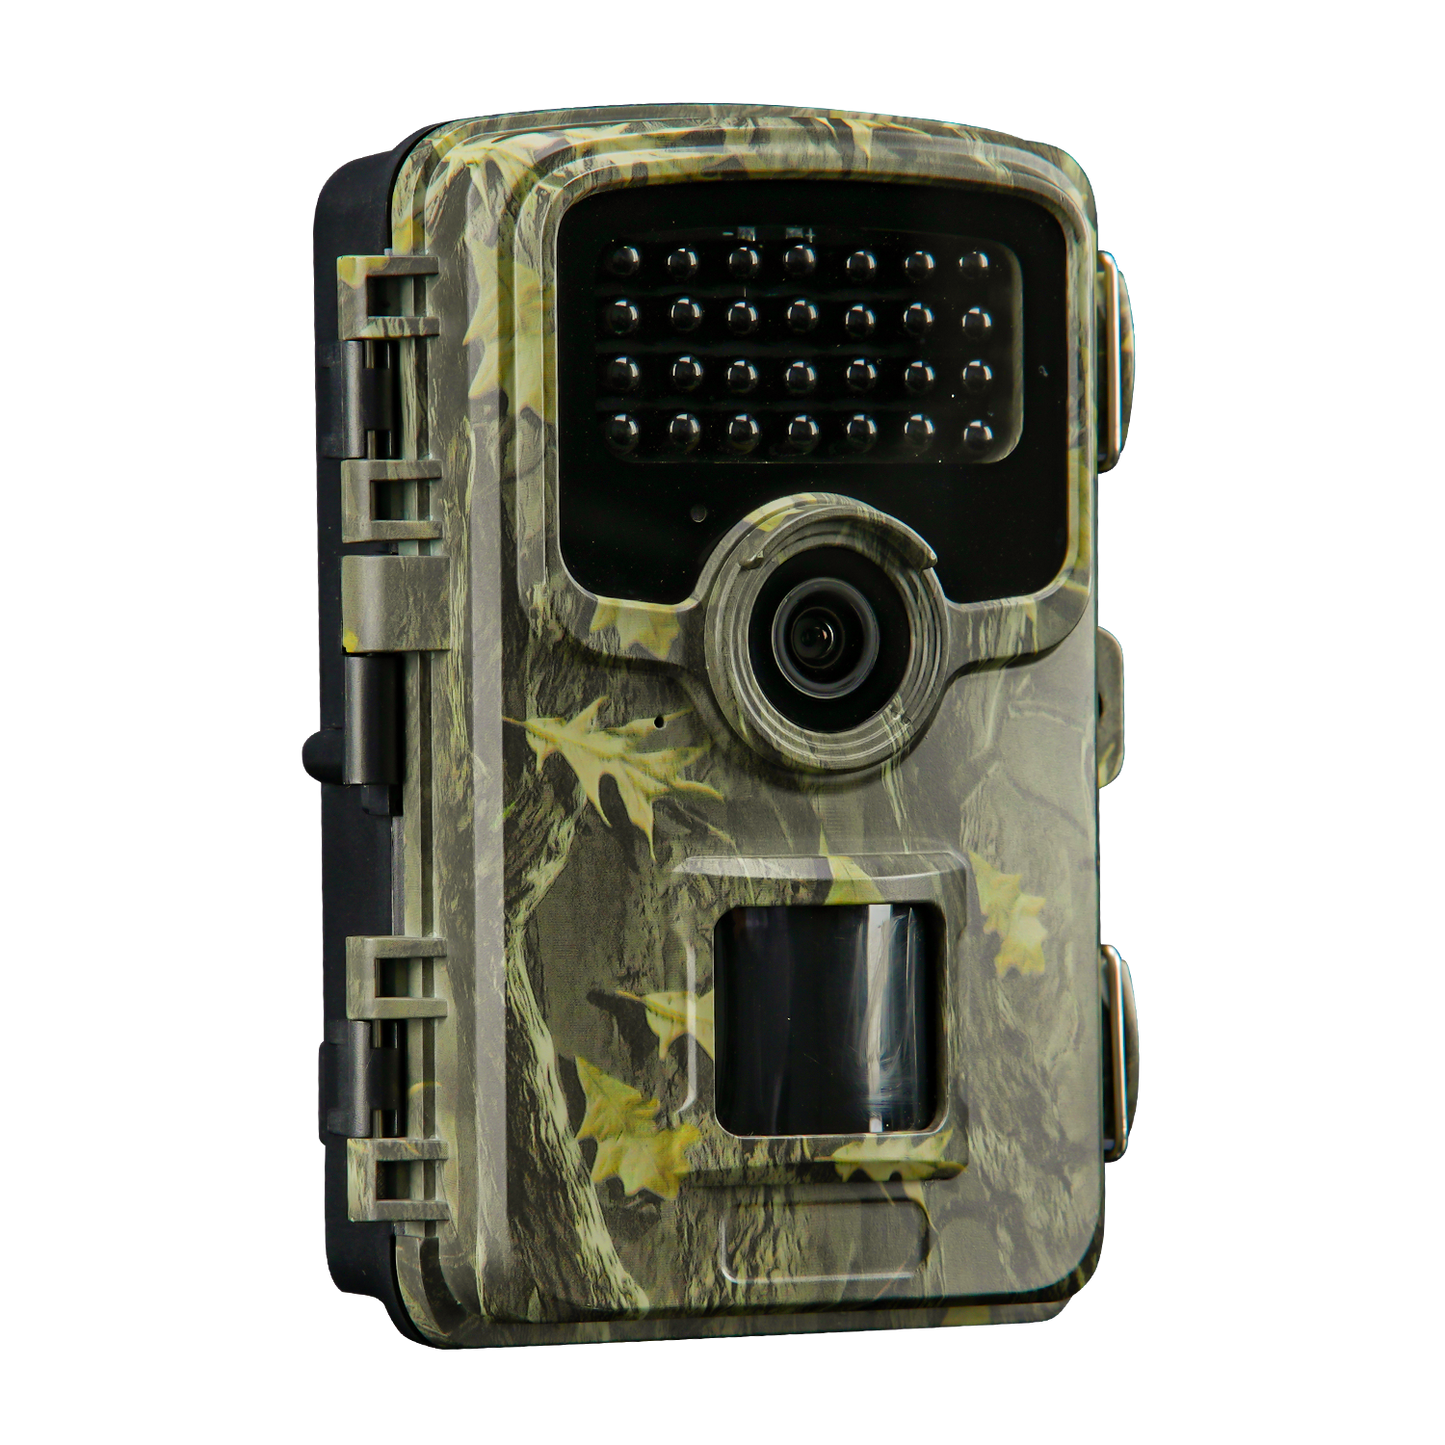 Coolife PH830 Caméra de chasse haute résolution 32 MP 1520 K avec vision nocturne pour la faune en plein air